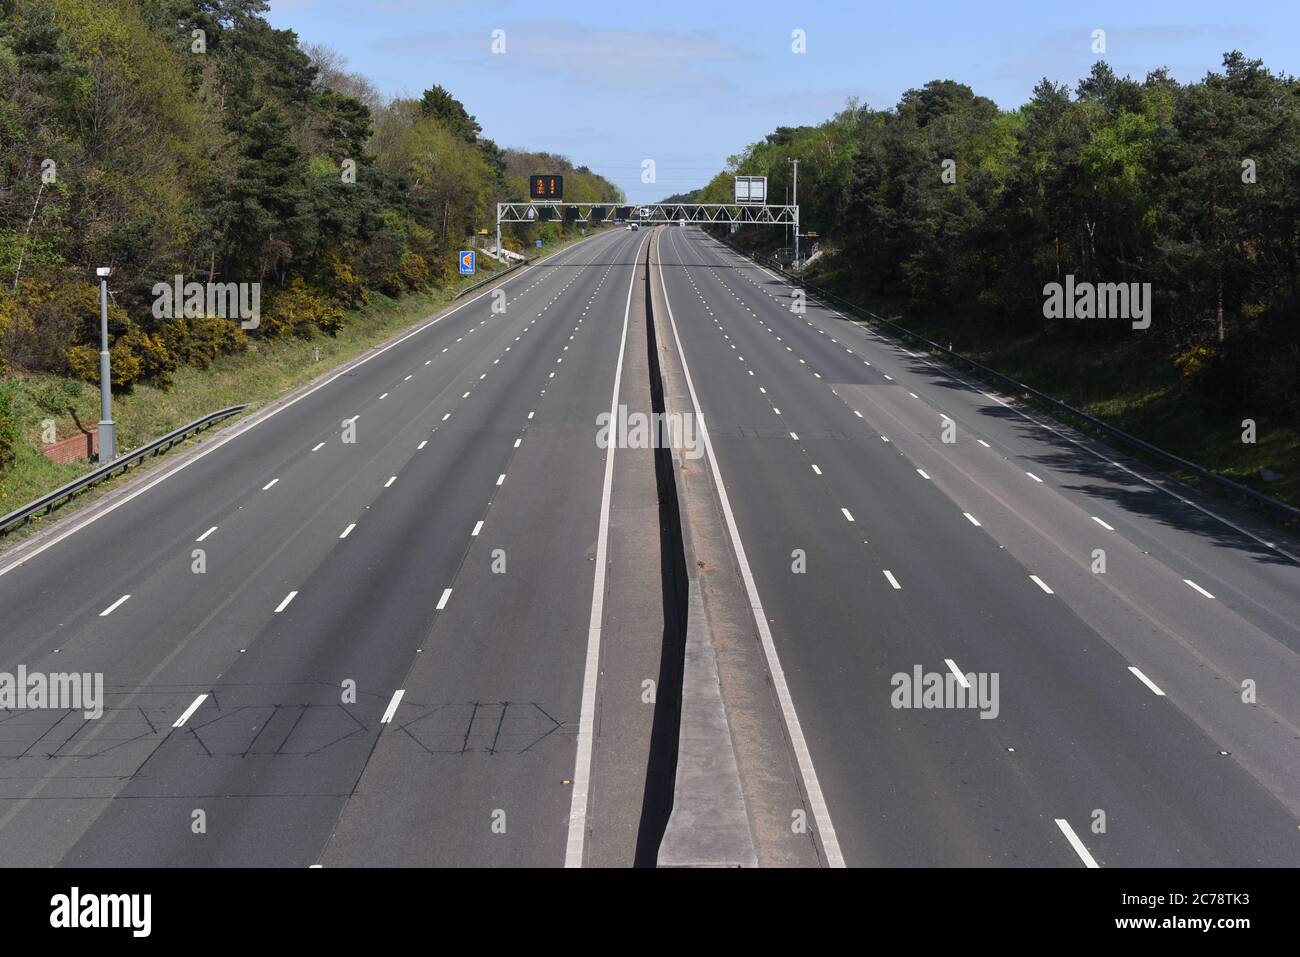 Camberley, Surrey/UK - 13 avril 2020: L'autoroute M3 de Surrey est complètement vide sur cette photo prise pendant le confinement de Covid-19 Banque D'Images